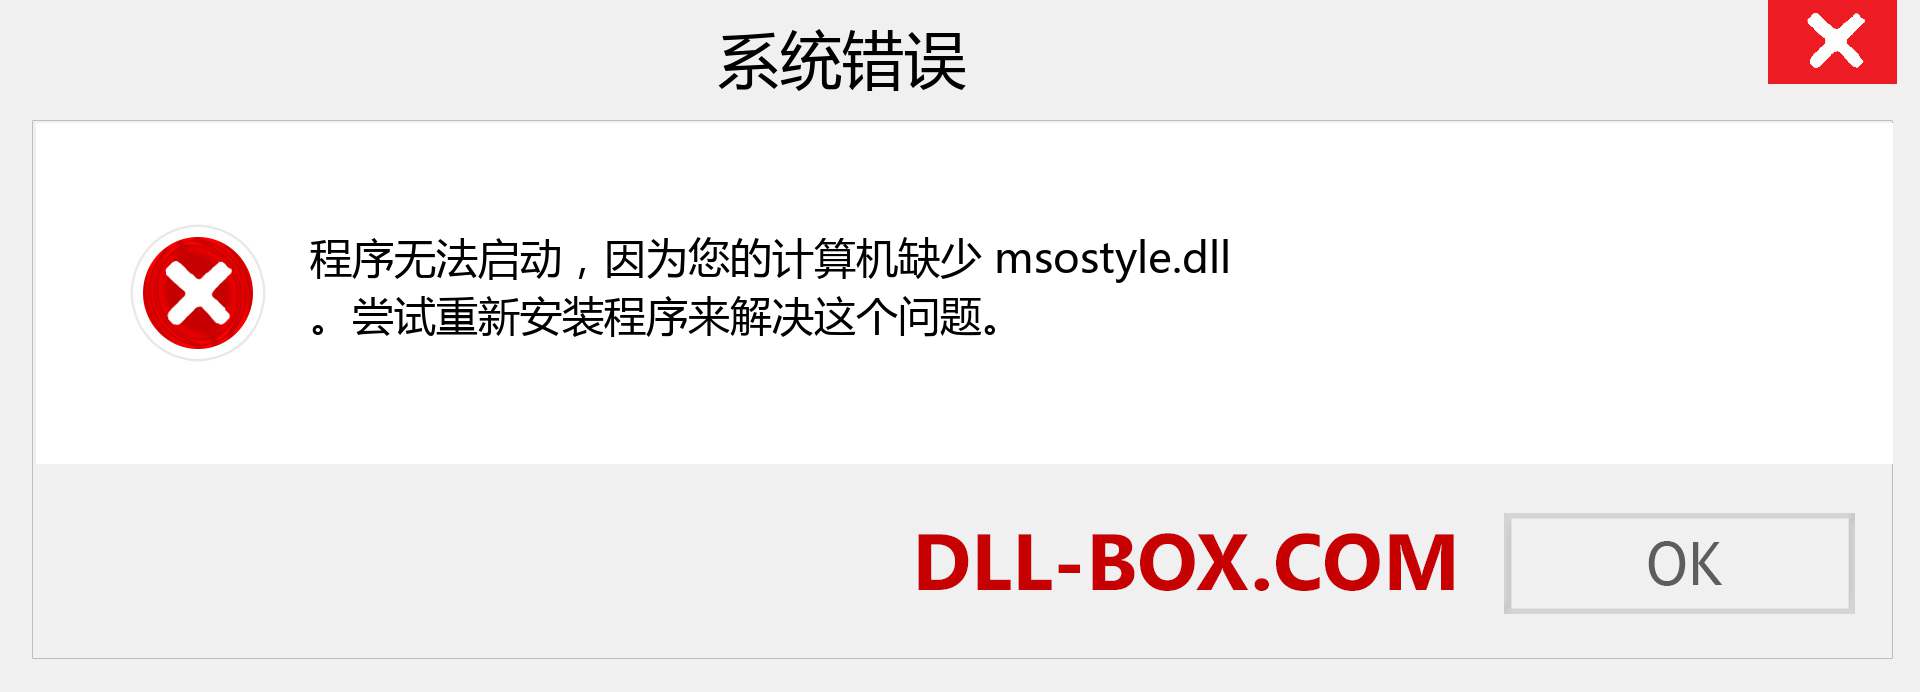 msostyle.dll 文件丢失？。 适用于 Windows 7、8、10 的下载 - 修复 Windows、照片、图像上的 msostyle dll 丢失错误